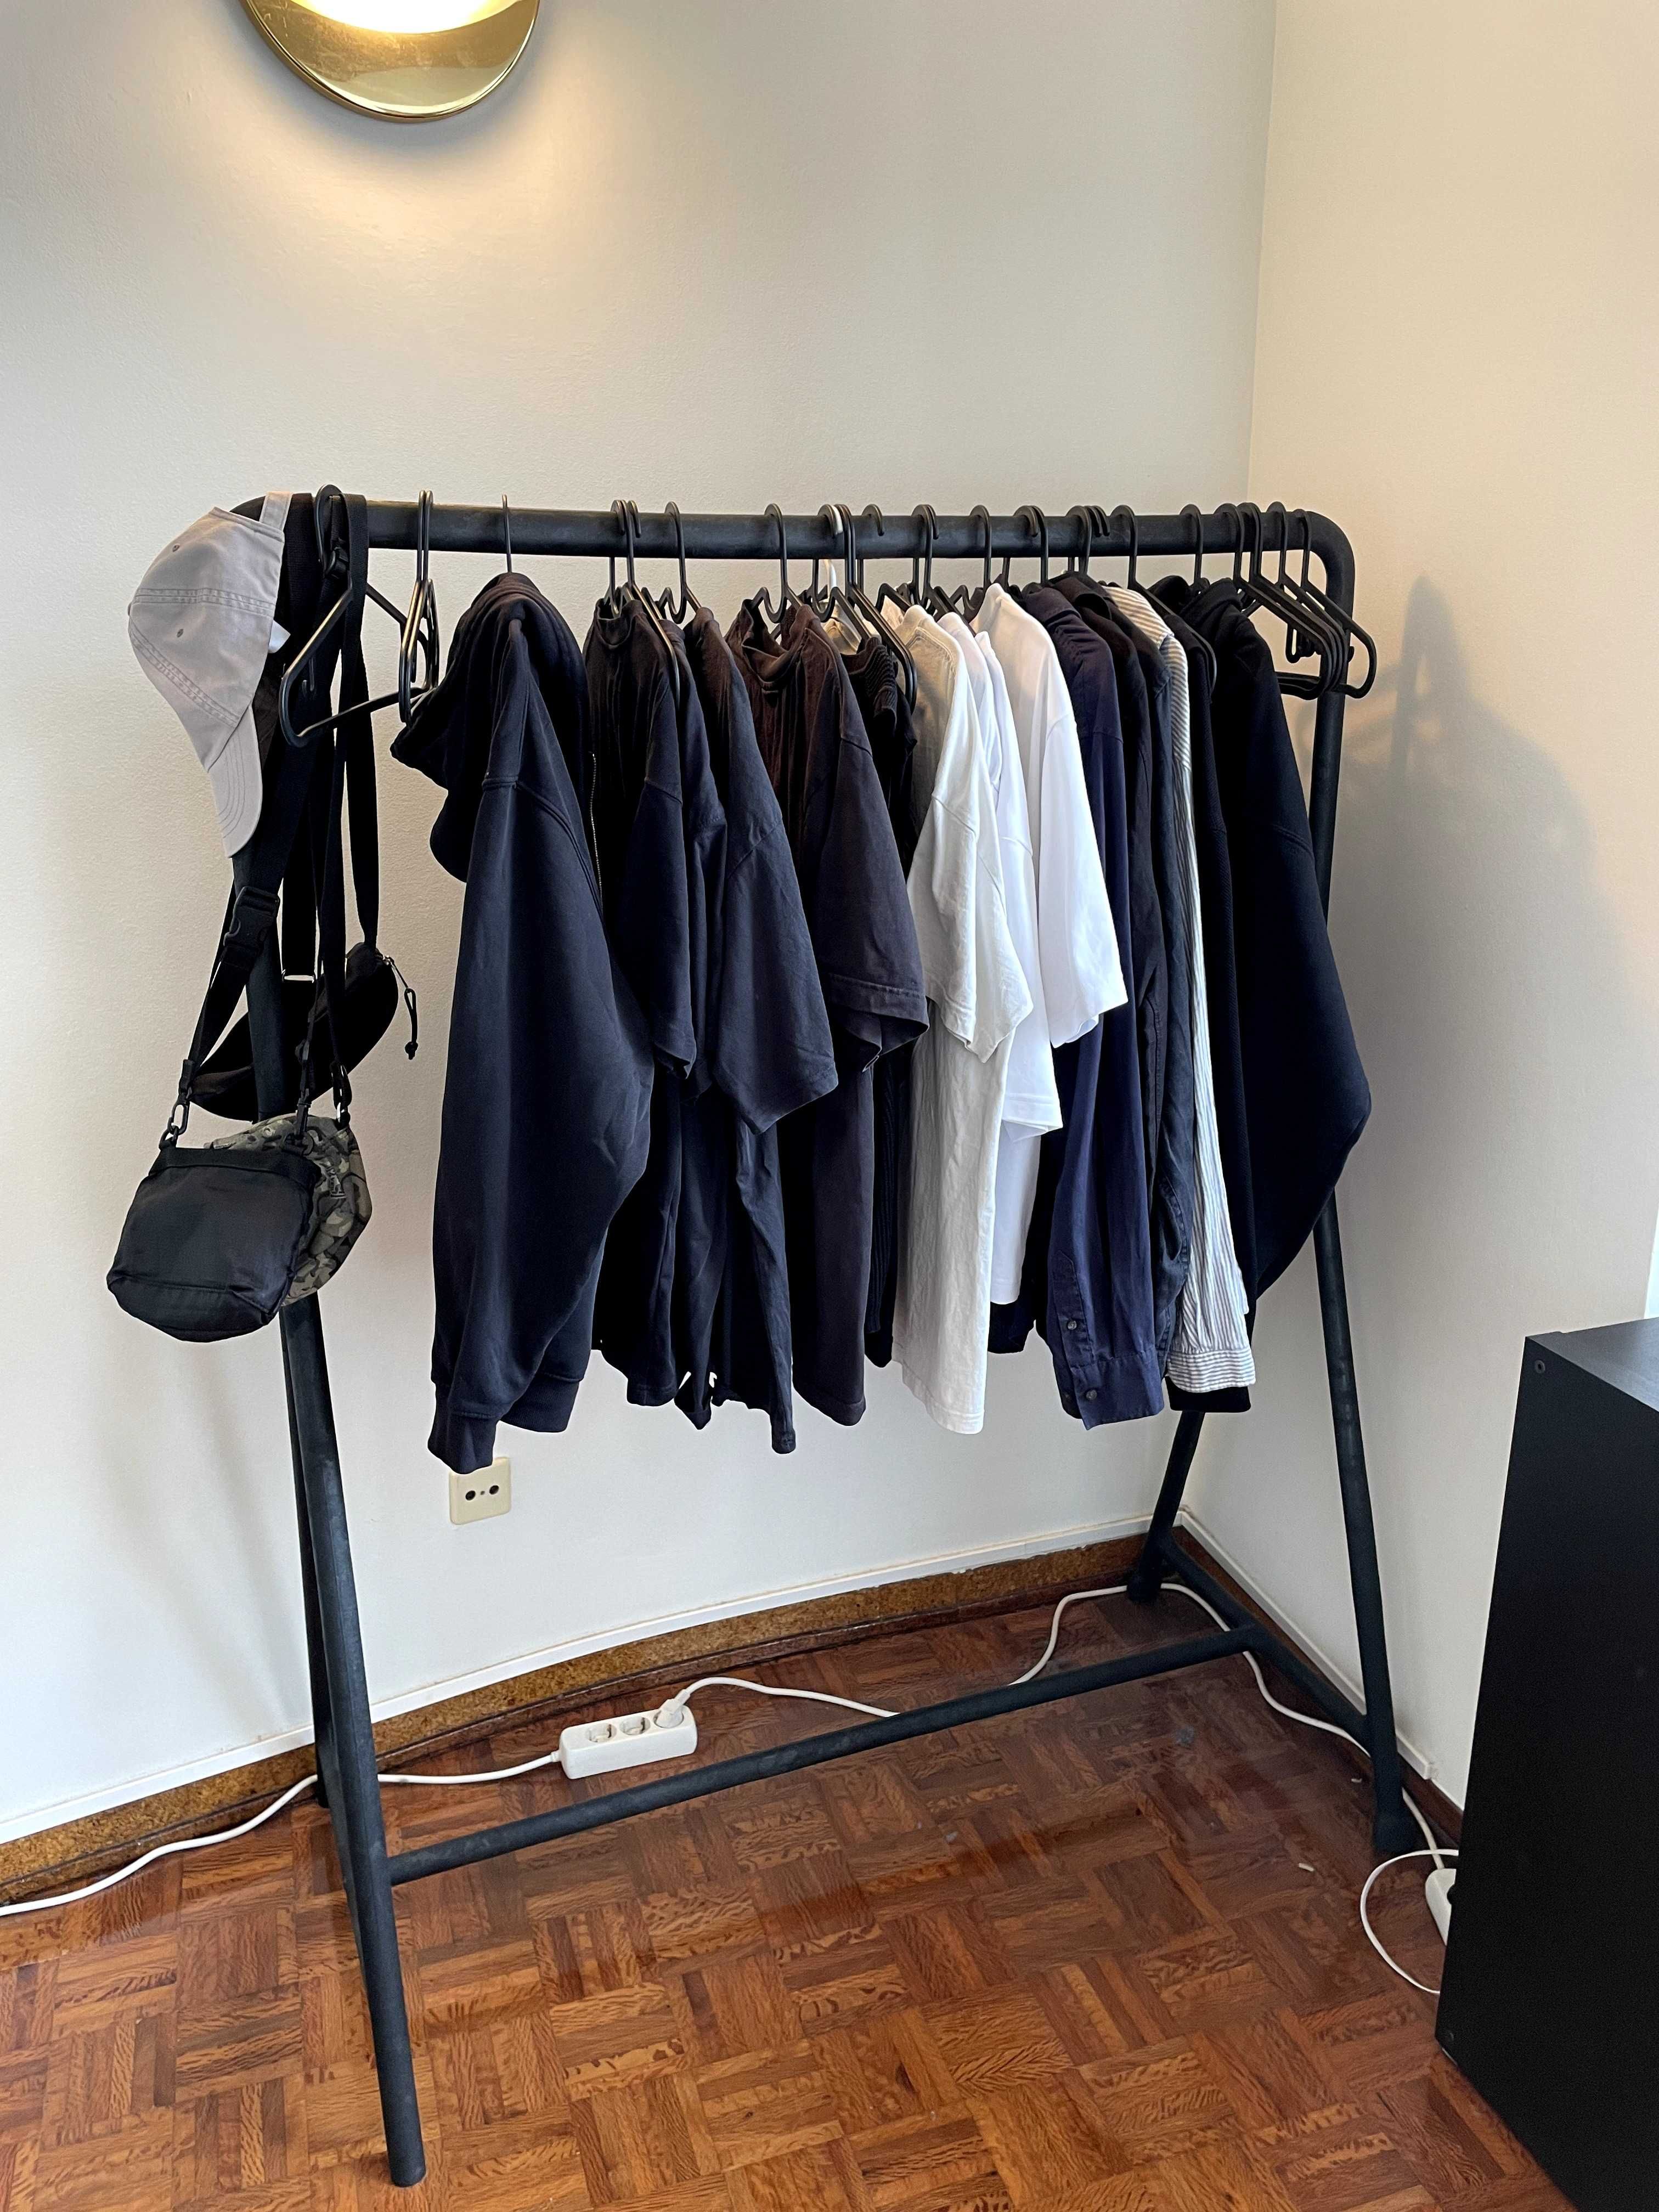 Estendal para roupa / Clothes rack